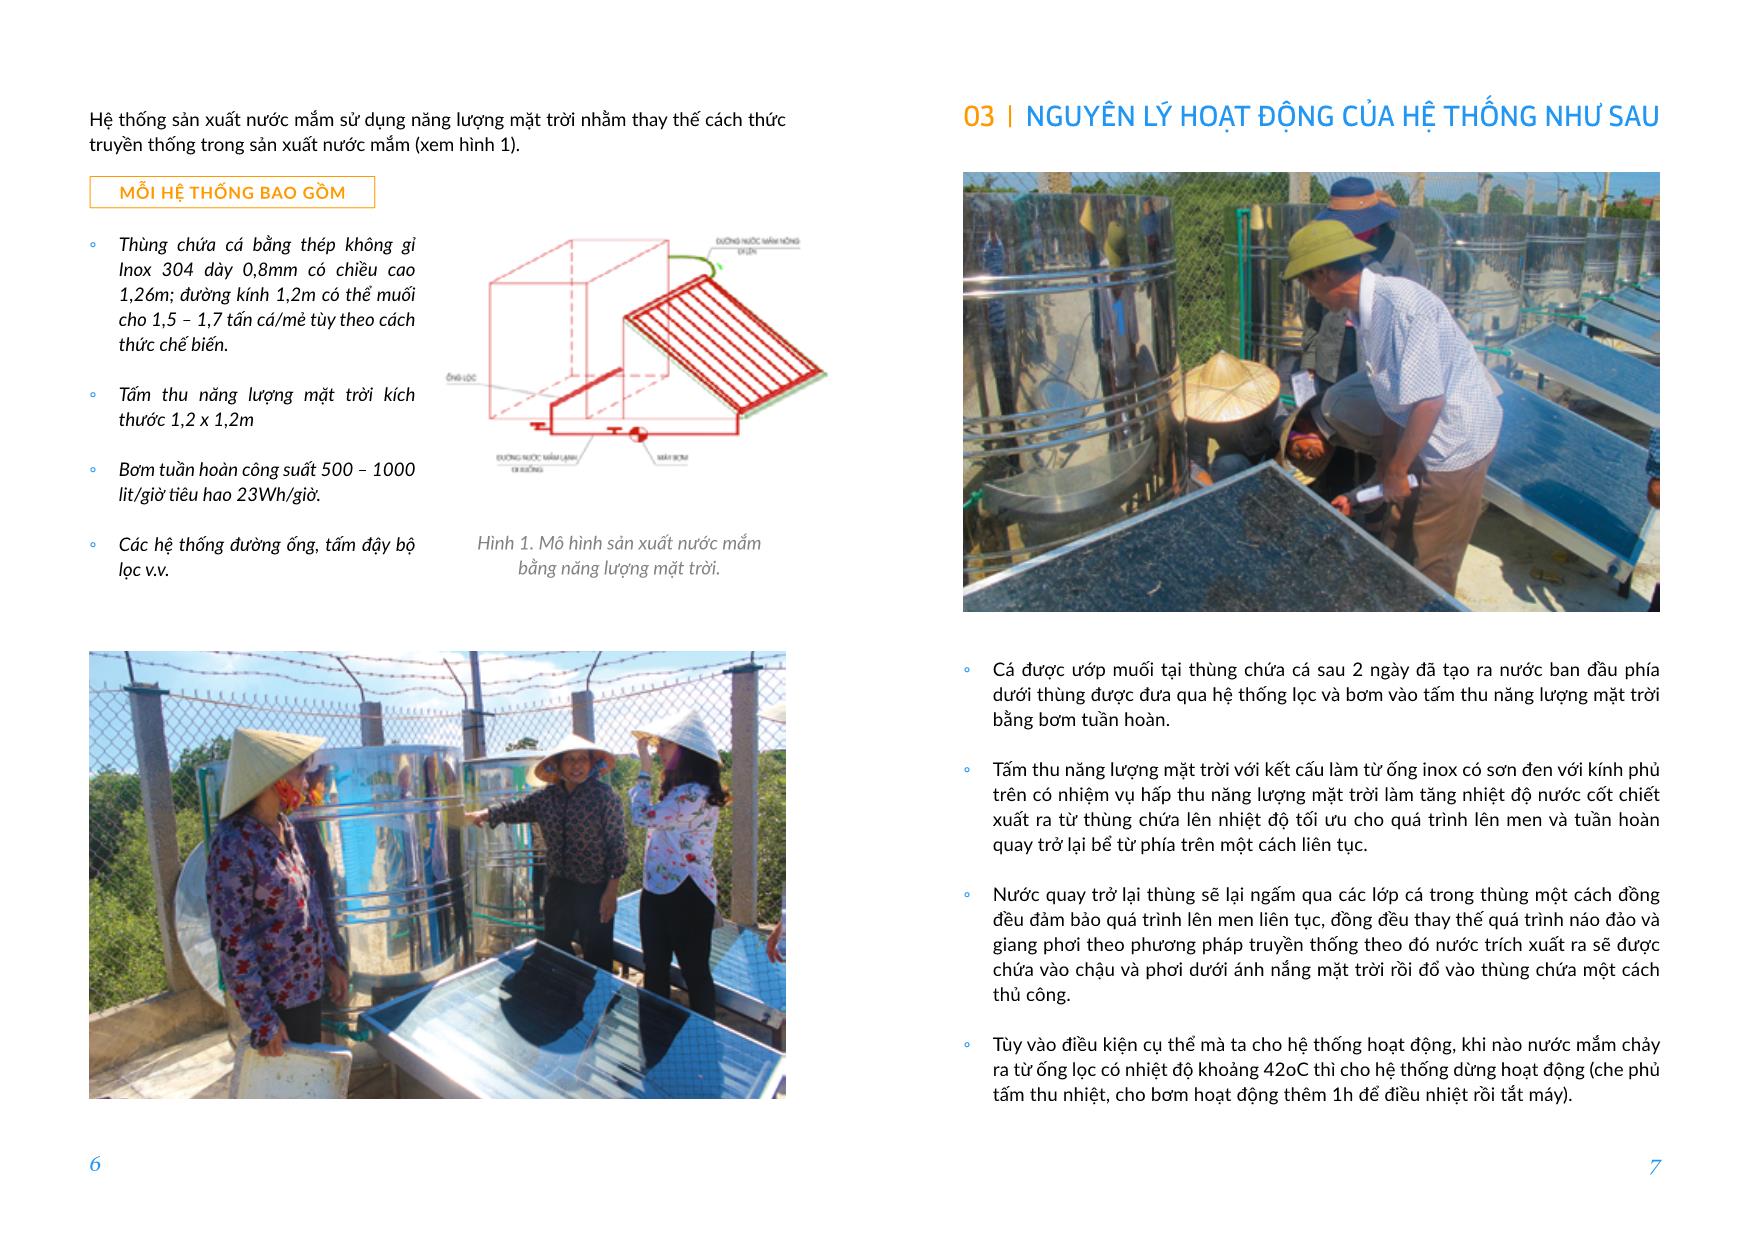 Dự án Ứng dụng năng lượng mặt trời trong sản xuất nước mắm tại xã Cẩm Nhượng, huyện Cẩm Xuyên, Hà Tĩnh trang 4